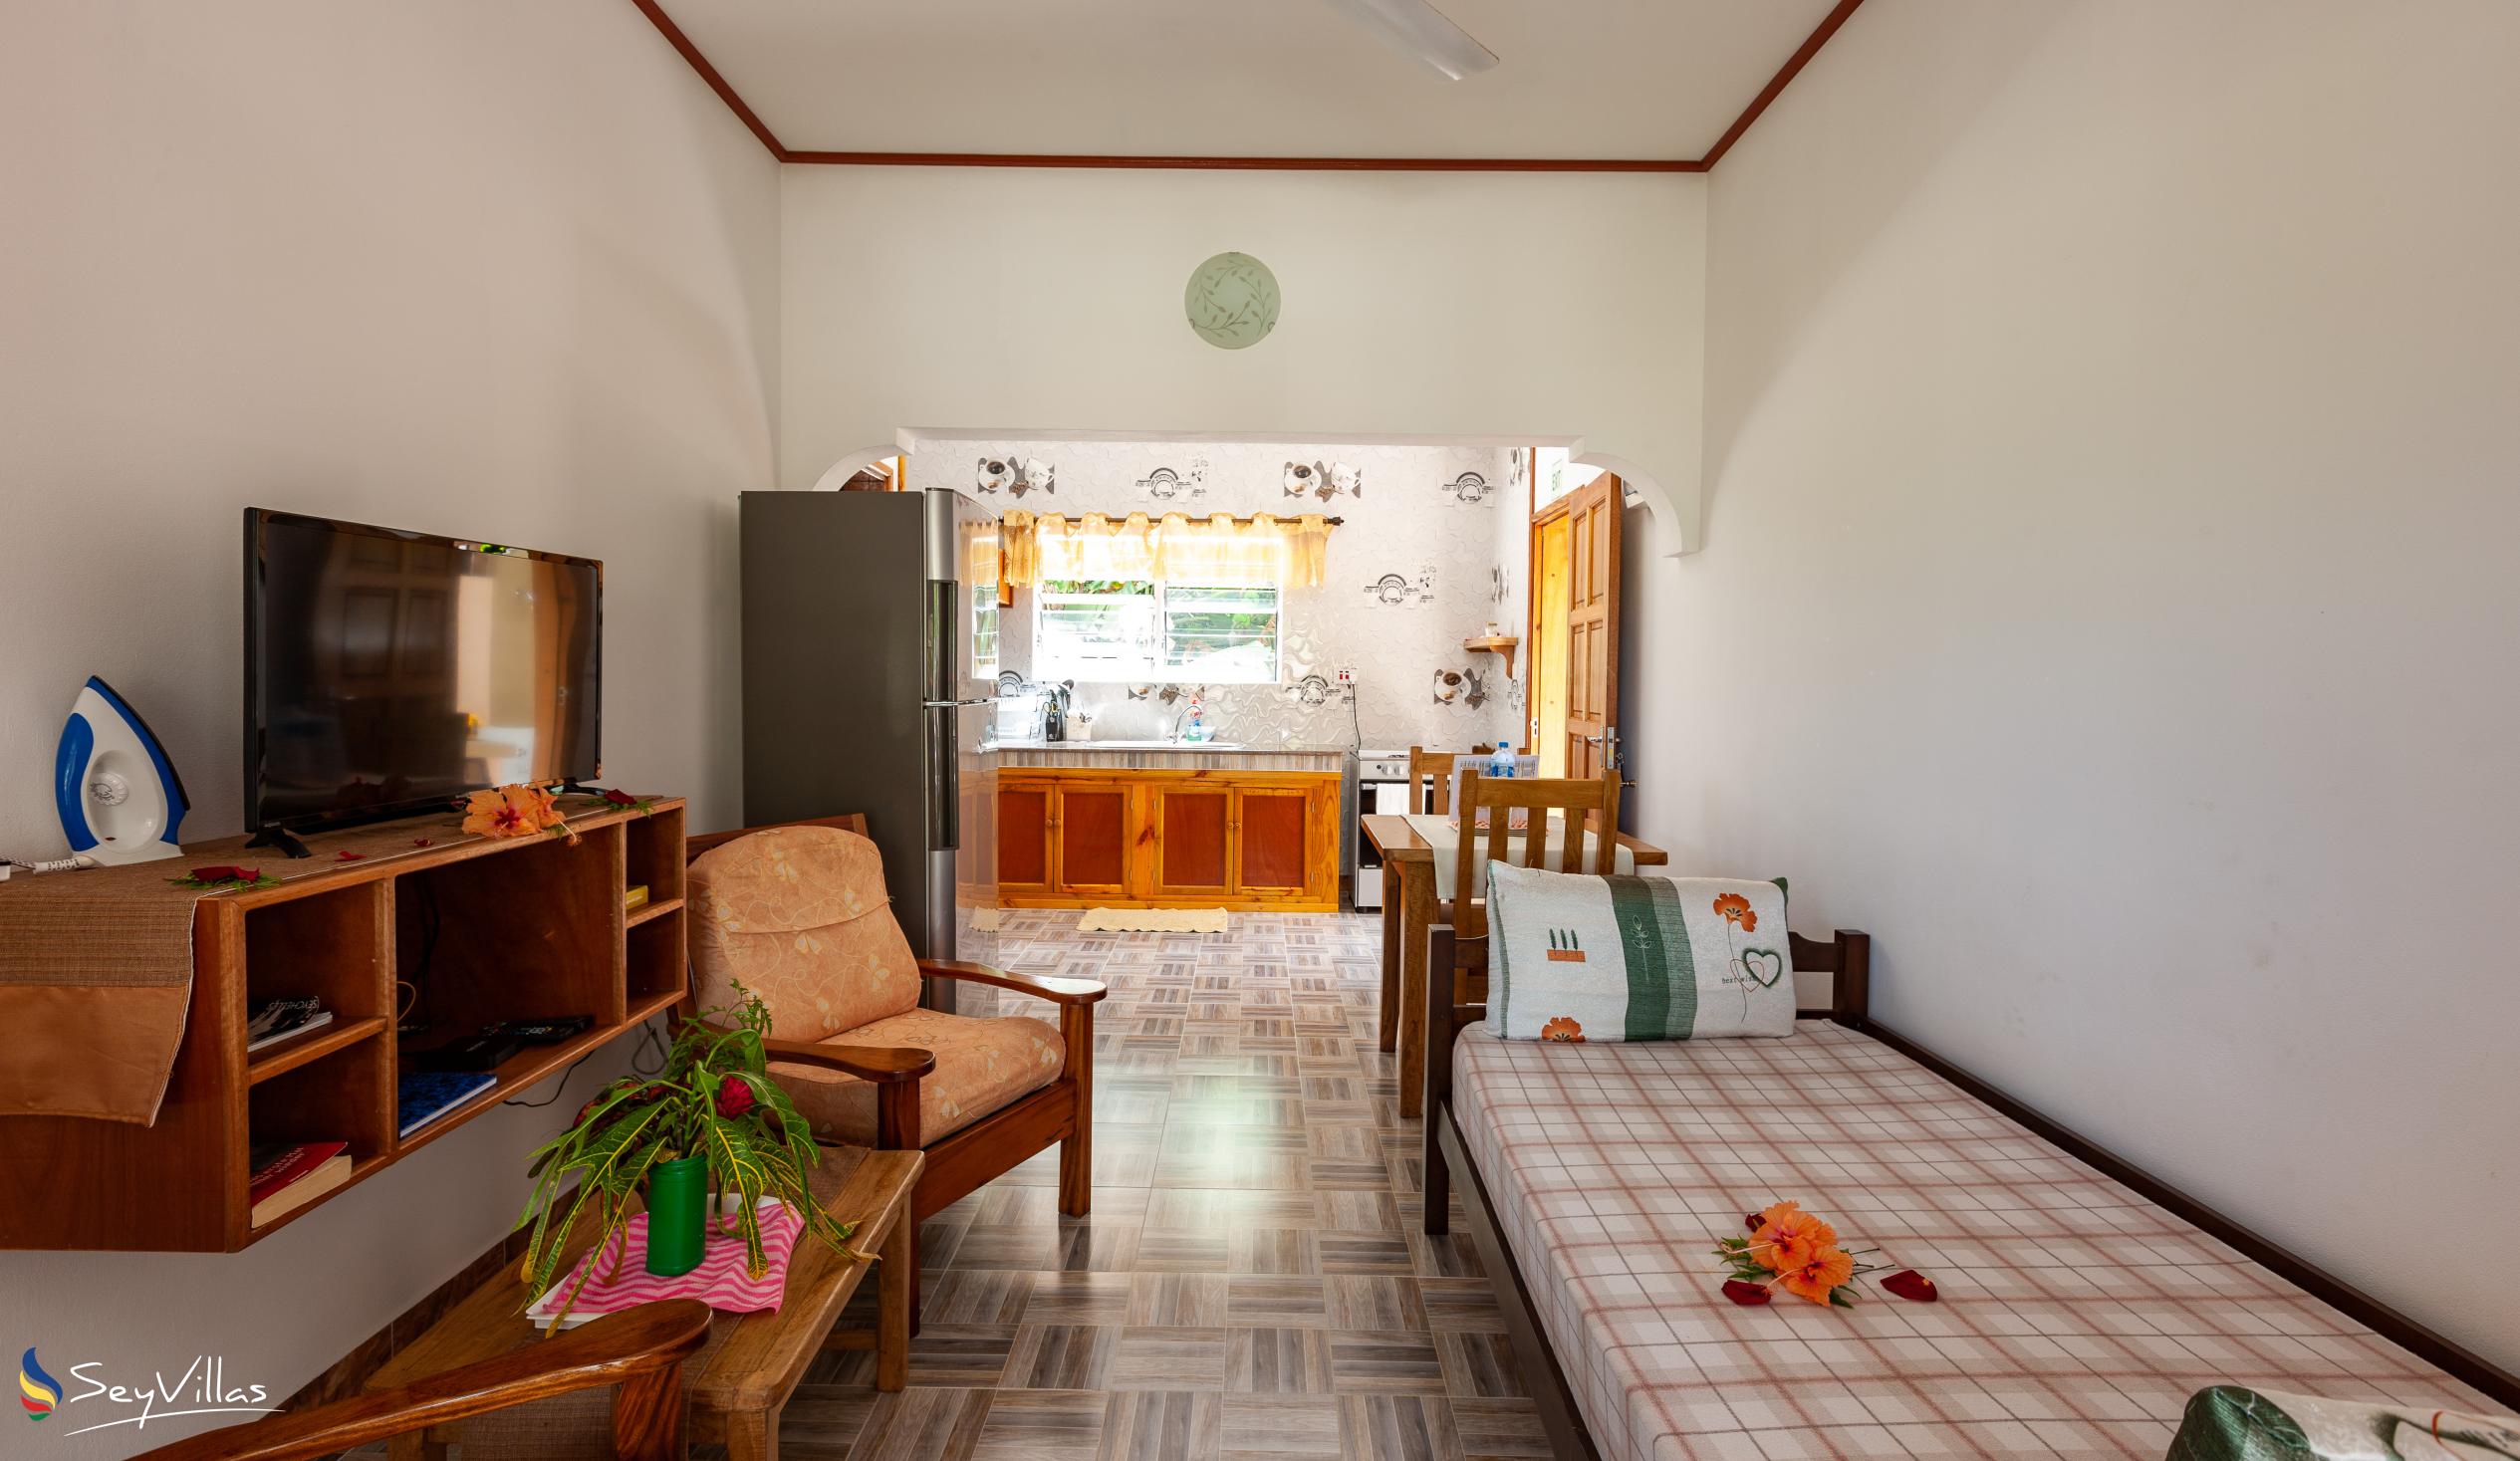 Foto 36: La Residence d'Almee - Appartement 1 chambre - Praslin (Seychelles)